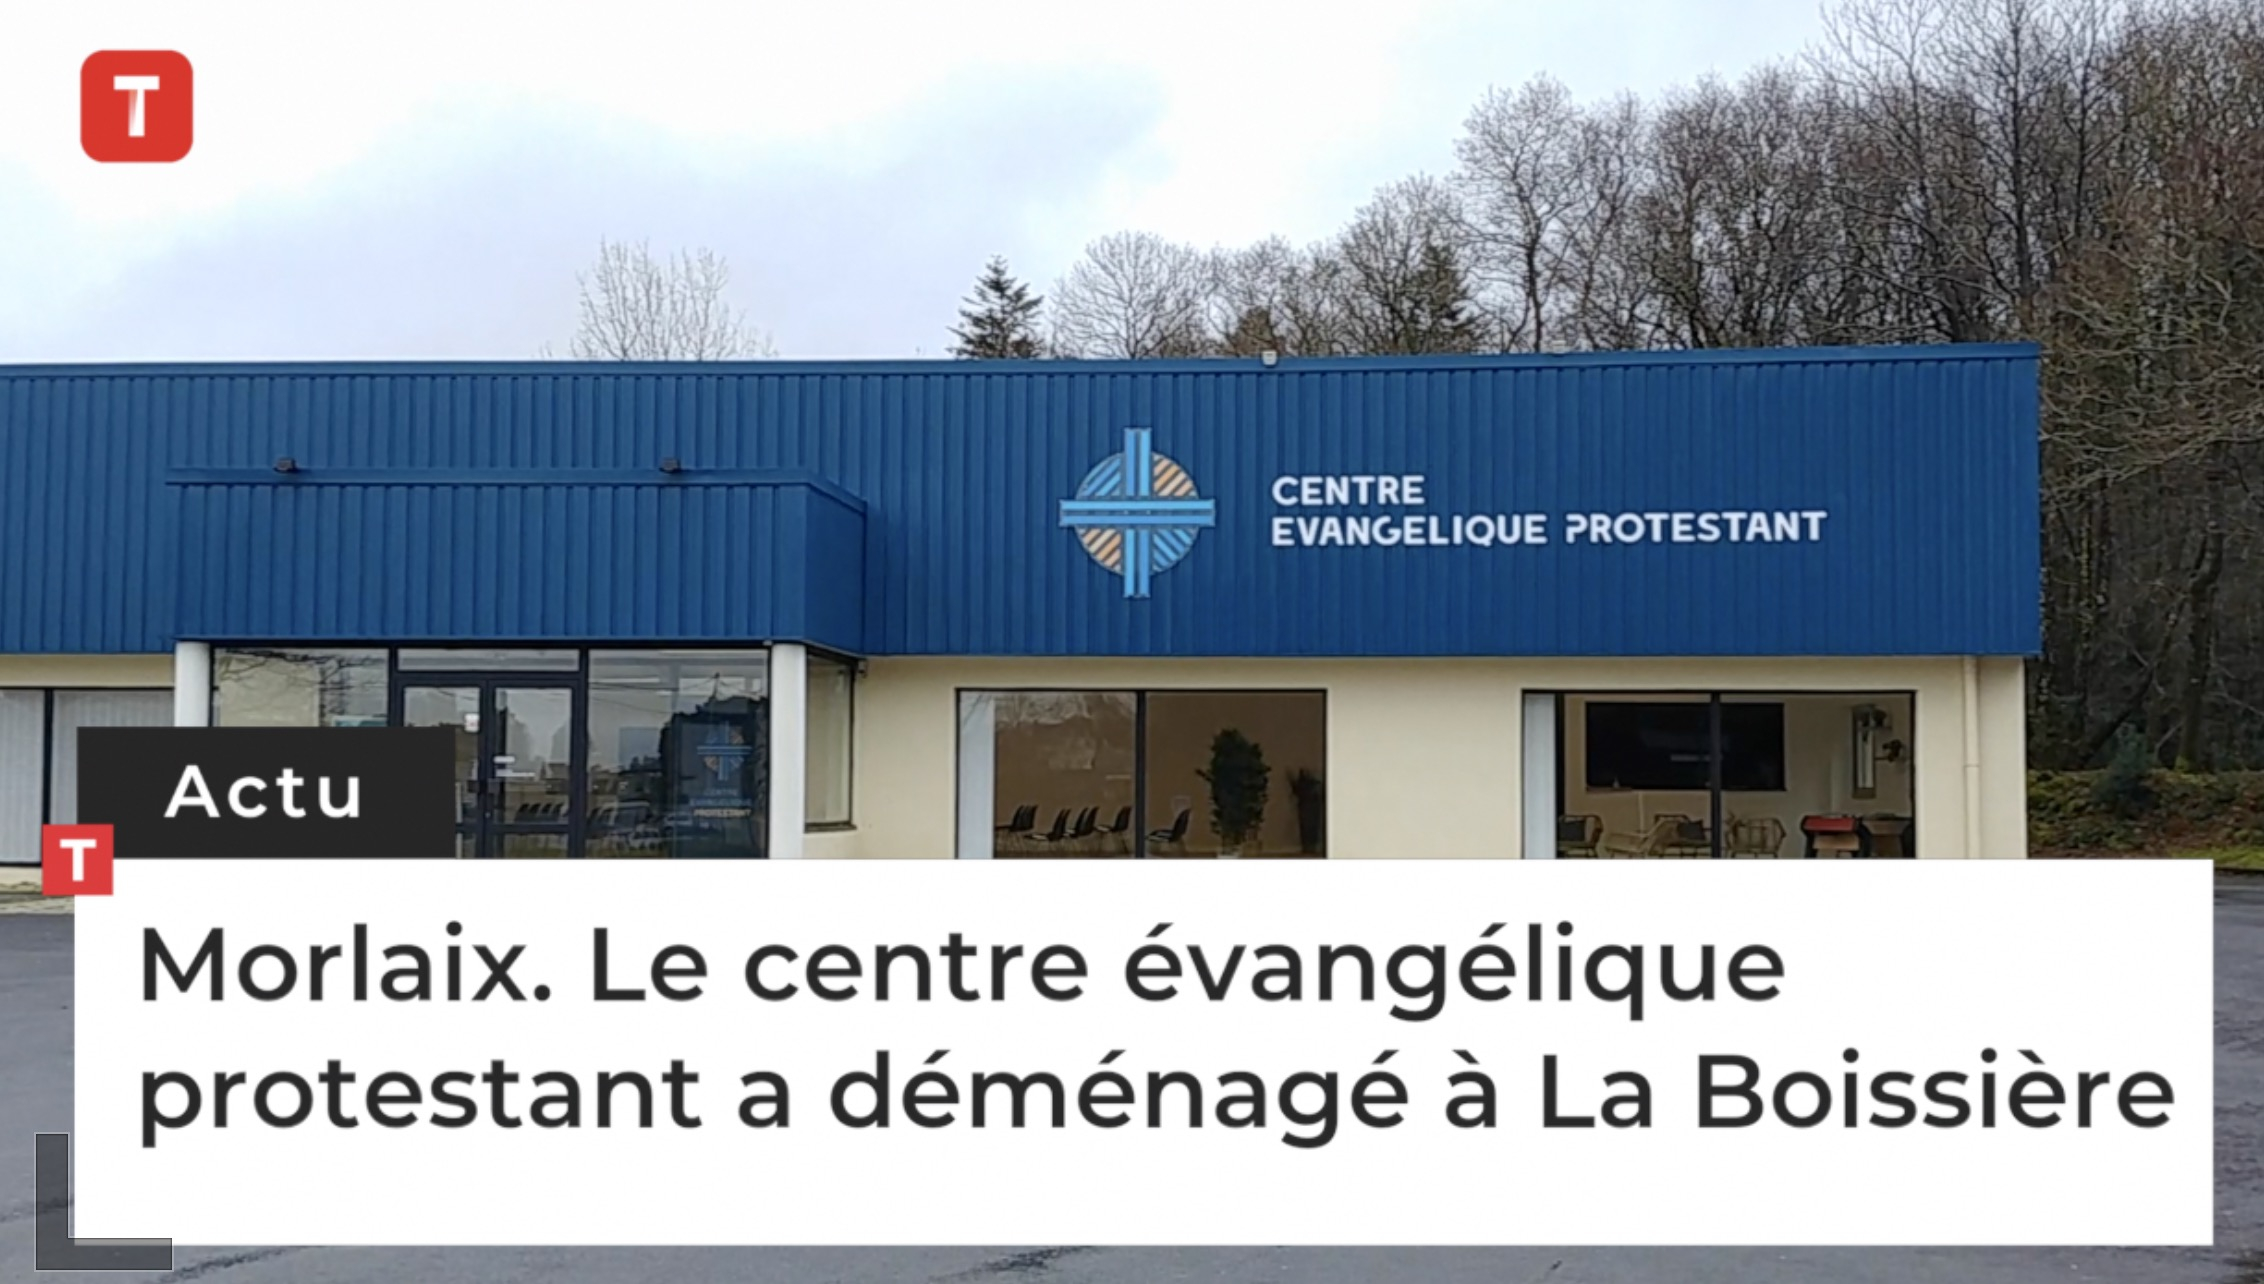 Morlaix. Le centre évangélique protestant a déménagé à La Boissière (Le Télégramme)